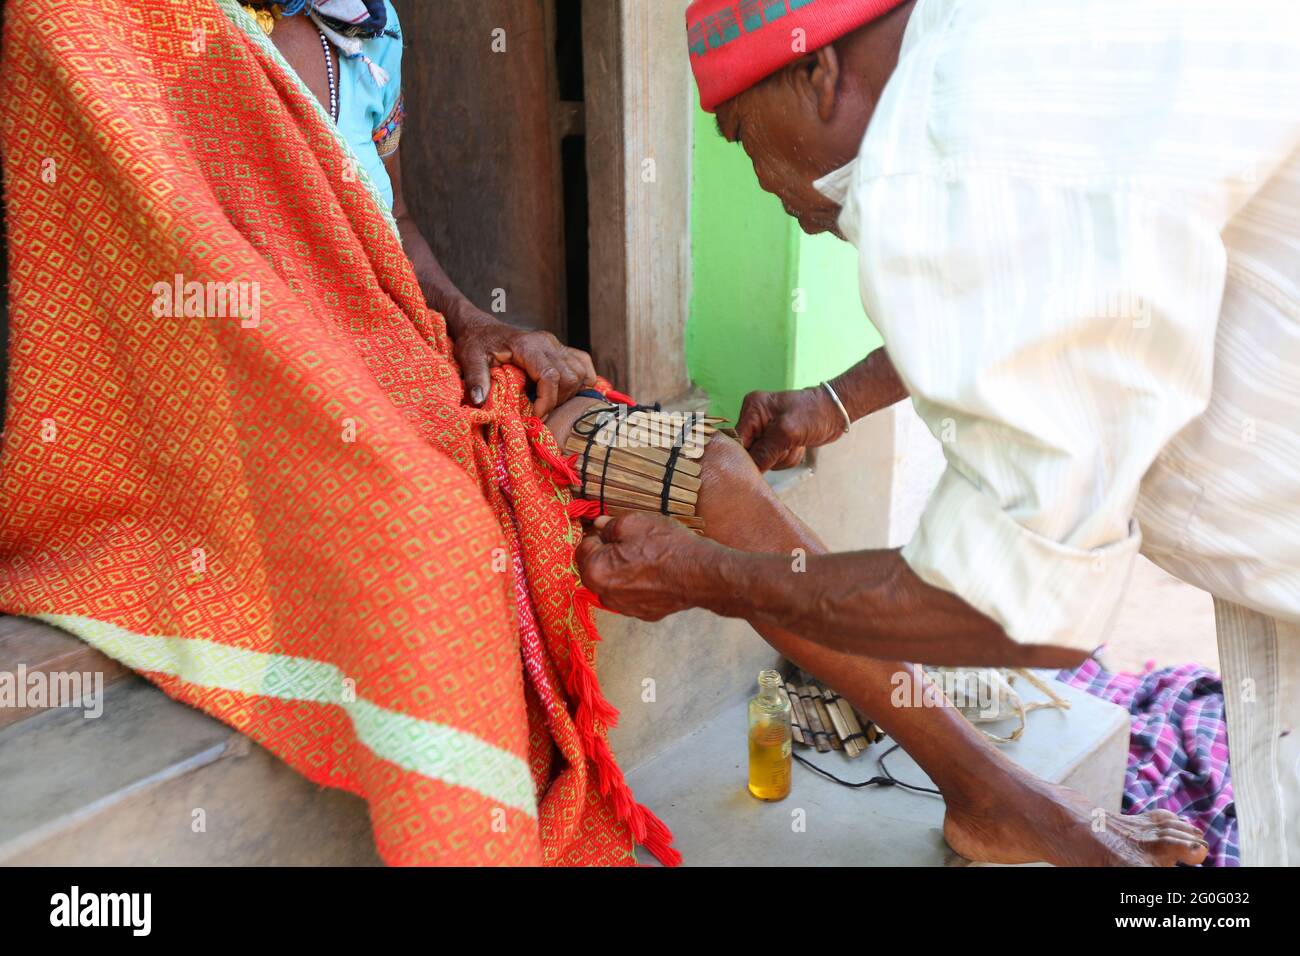 LANJIA SAORA STAMM. Indischer indigener Stammesmediziner, der sein traditionelles Wissen zur Behandlung des Patienten verwendet. Gunpur Dorf von Odisha, Indi Stockfoto